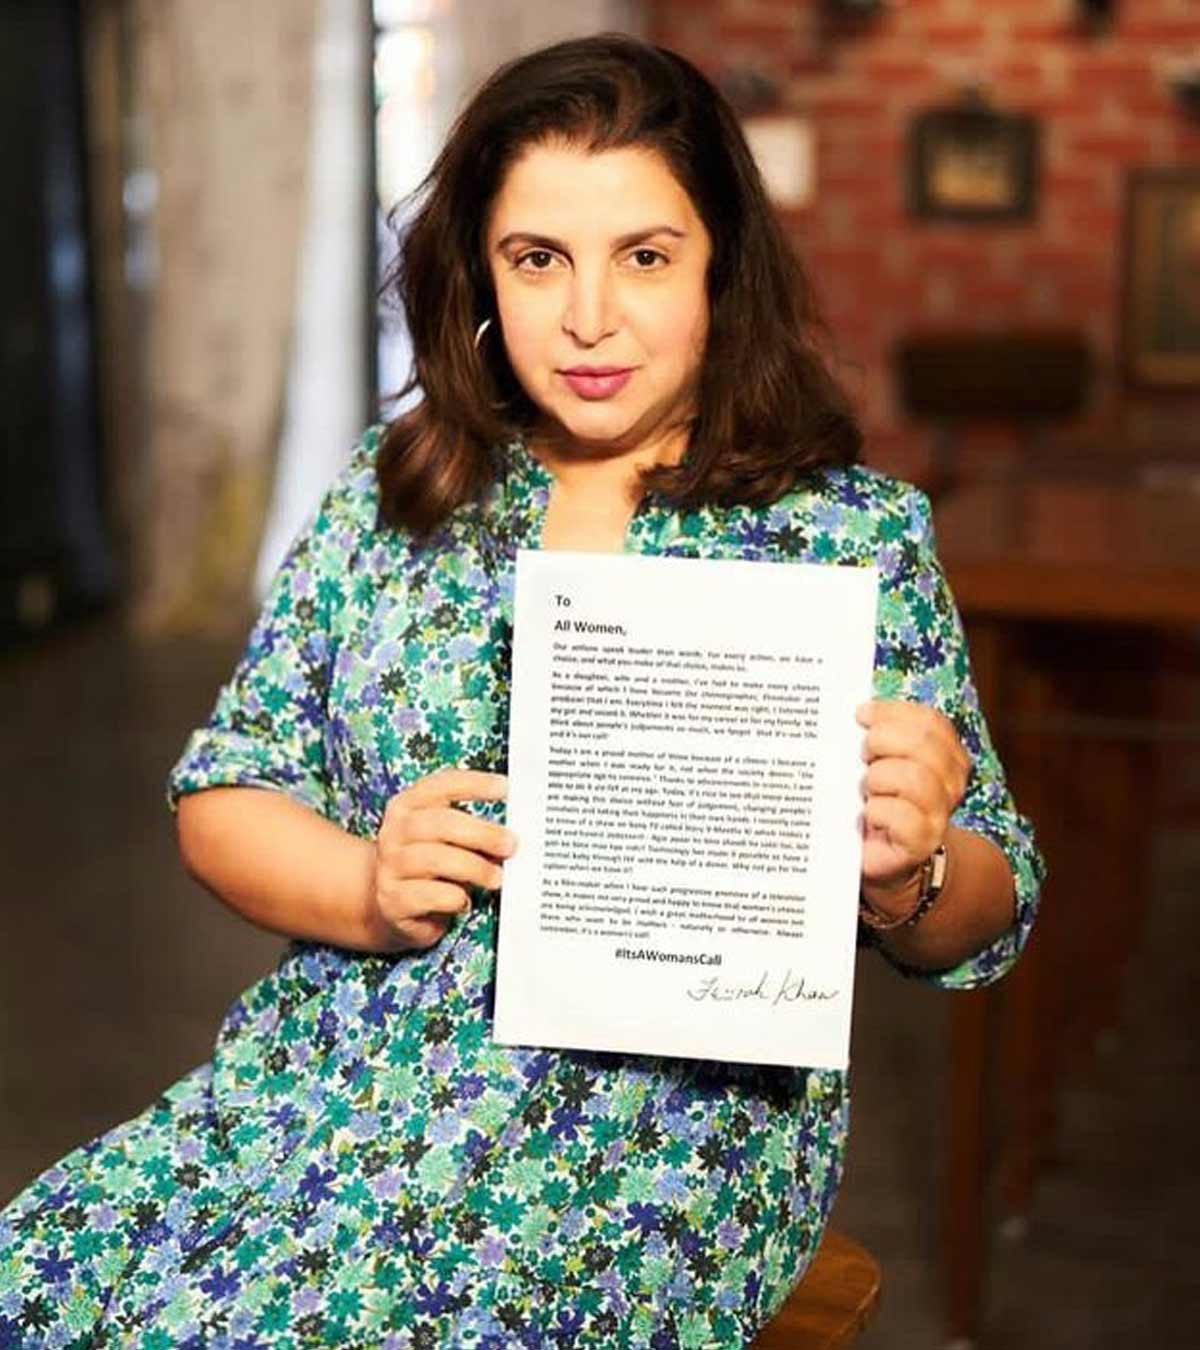 当我准备好了，我成为了母亲:法拉汗写了一封公开信，在43岁时通过试管受精接受母亲的身份